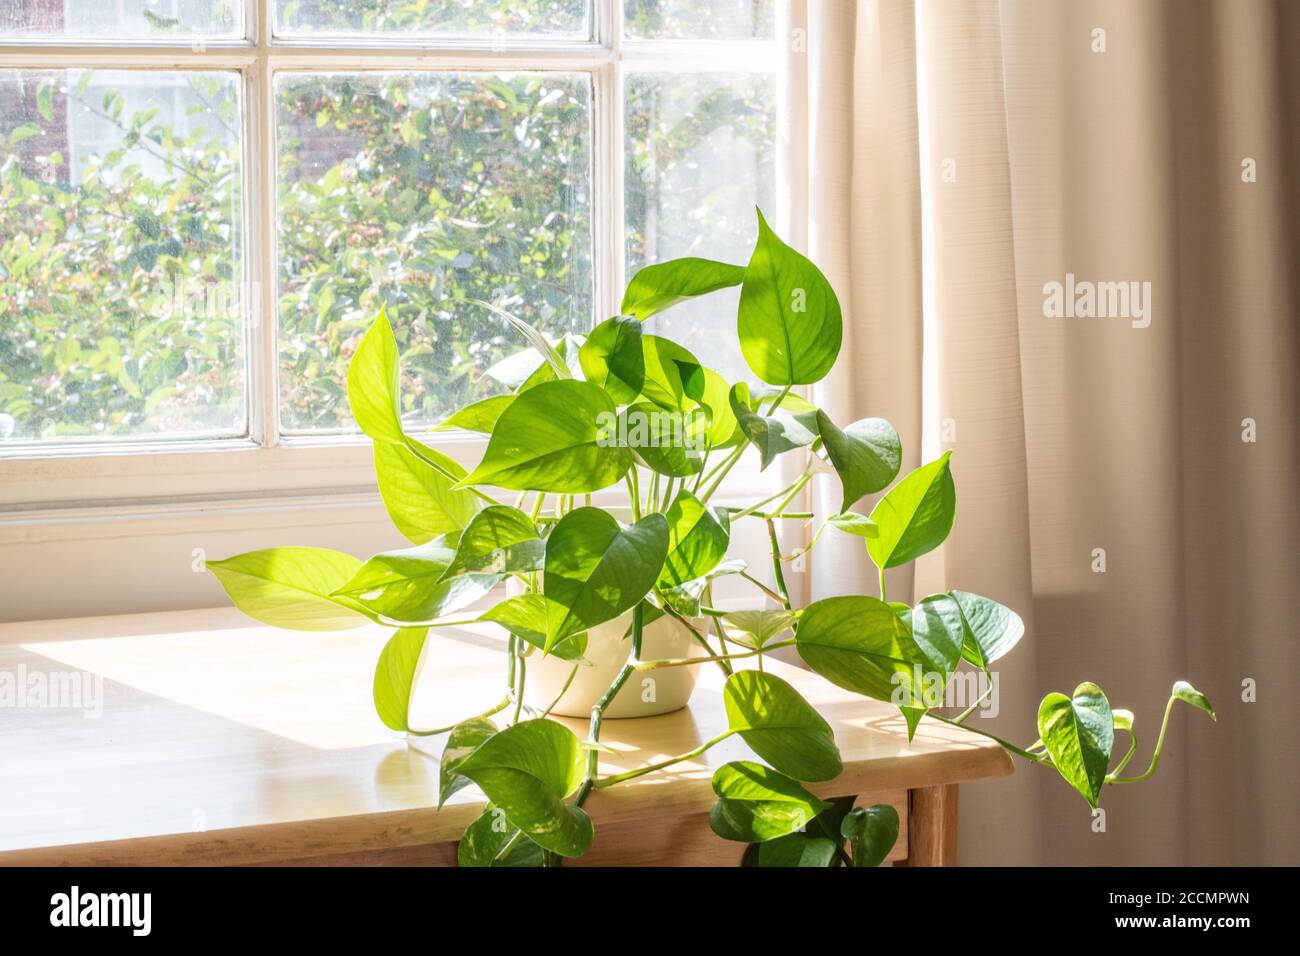 Interni Devils Ivy houseplant accanto a una finestra in un interno splendidamente progettato casa. Foto Stock